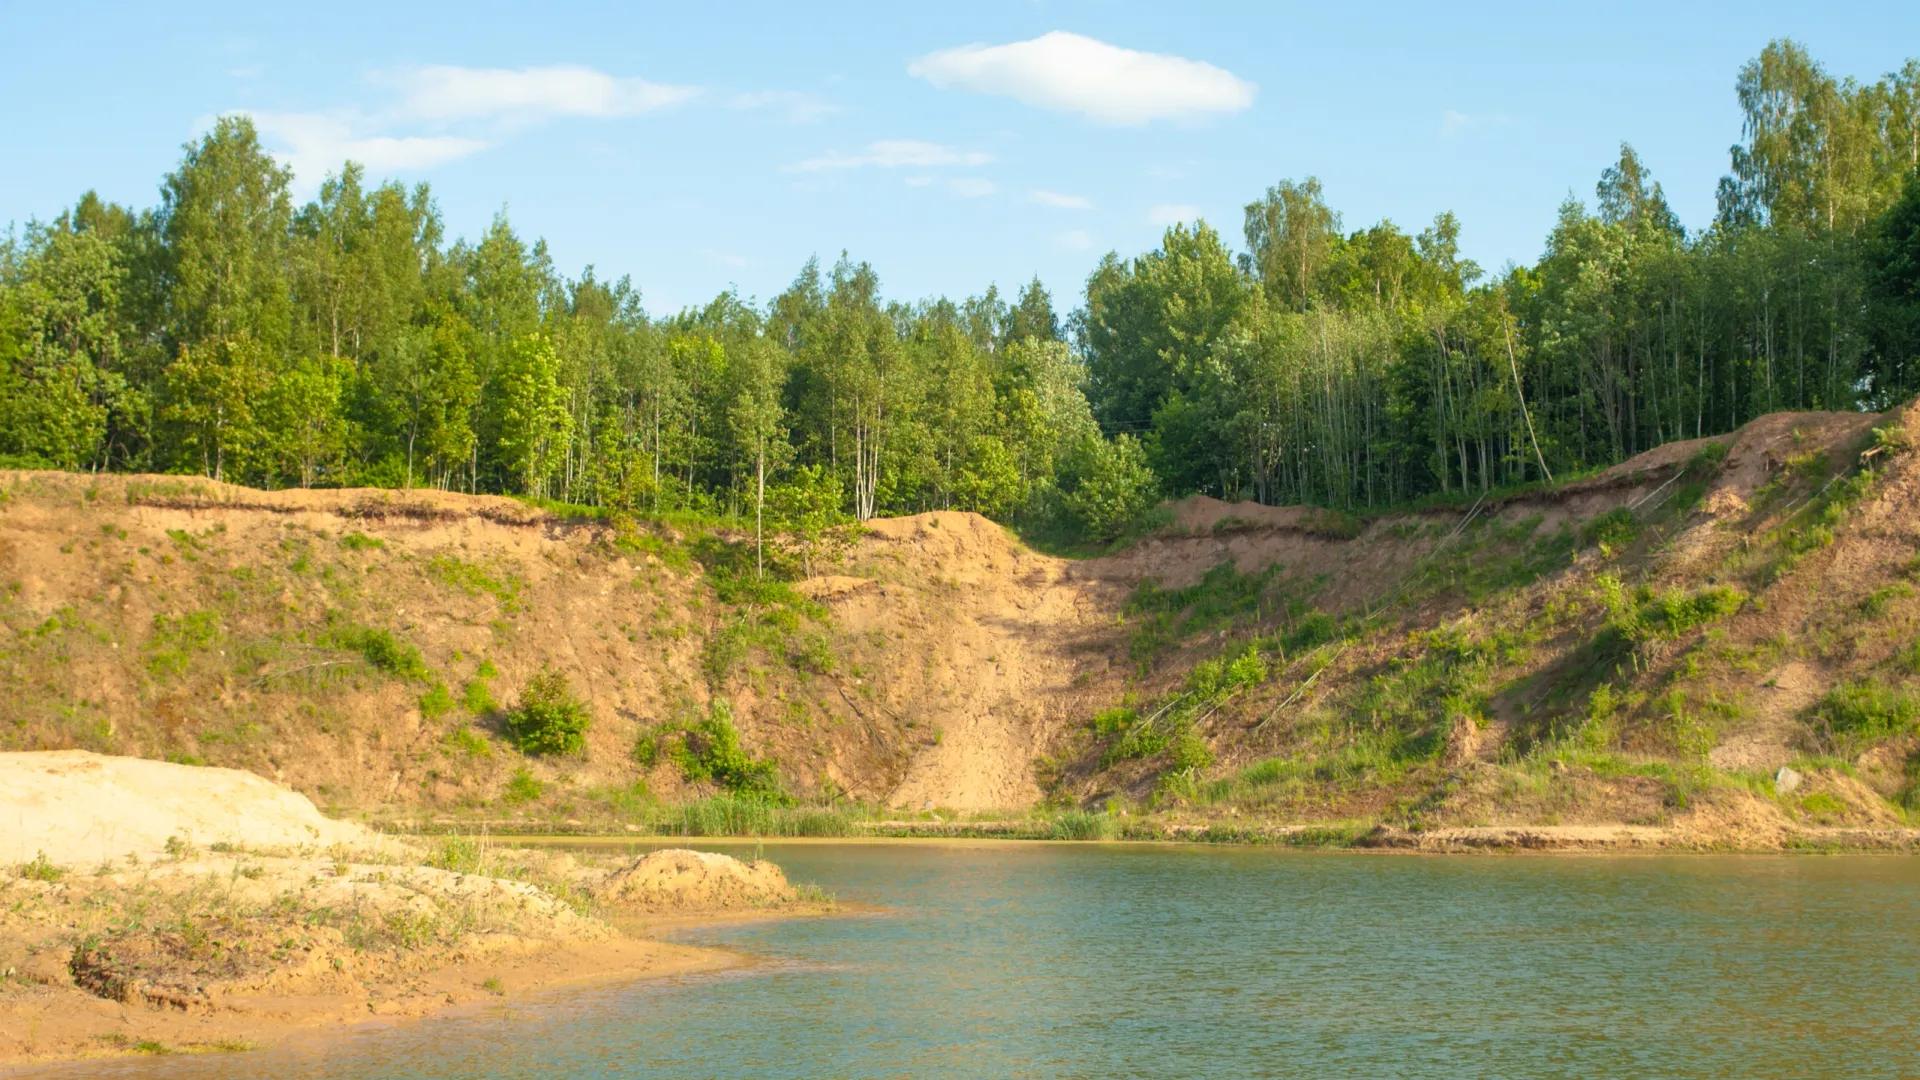 План благоустройства территории у озера Ханто уже готов. Фото: fotokaleinar/Shutterstock/Fotodom